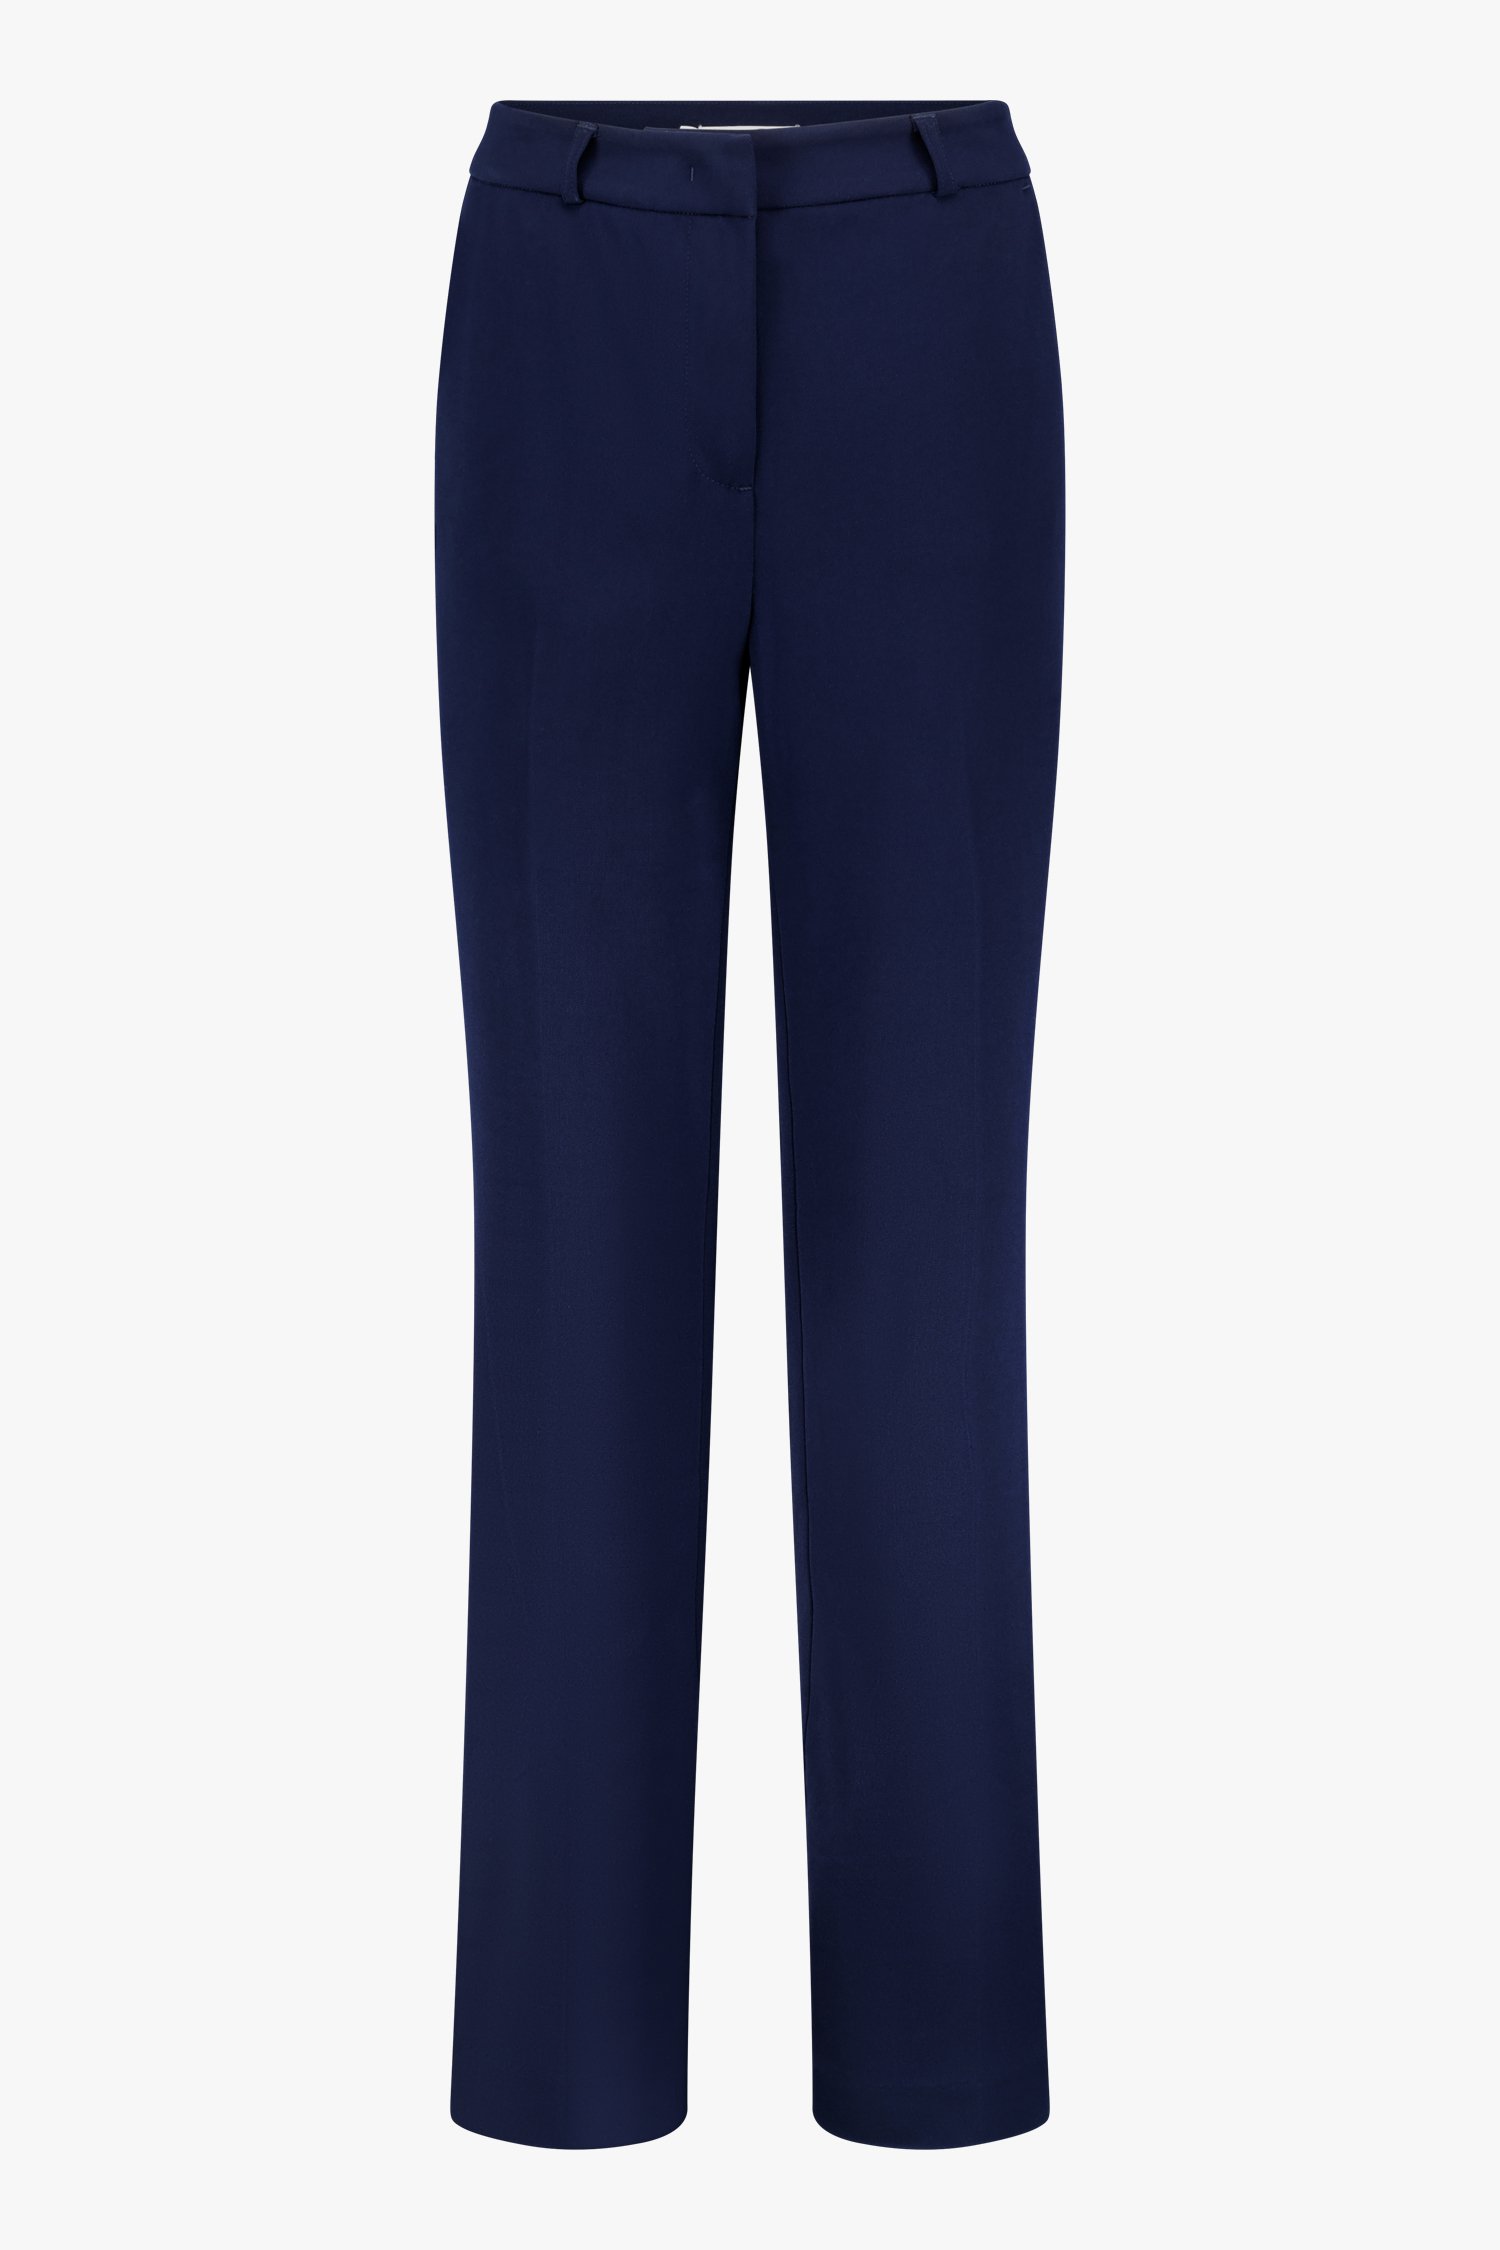 Blauwe geklede broek - straight fit van D'Auvry voor Dames